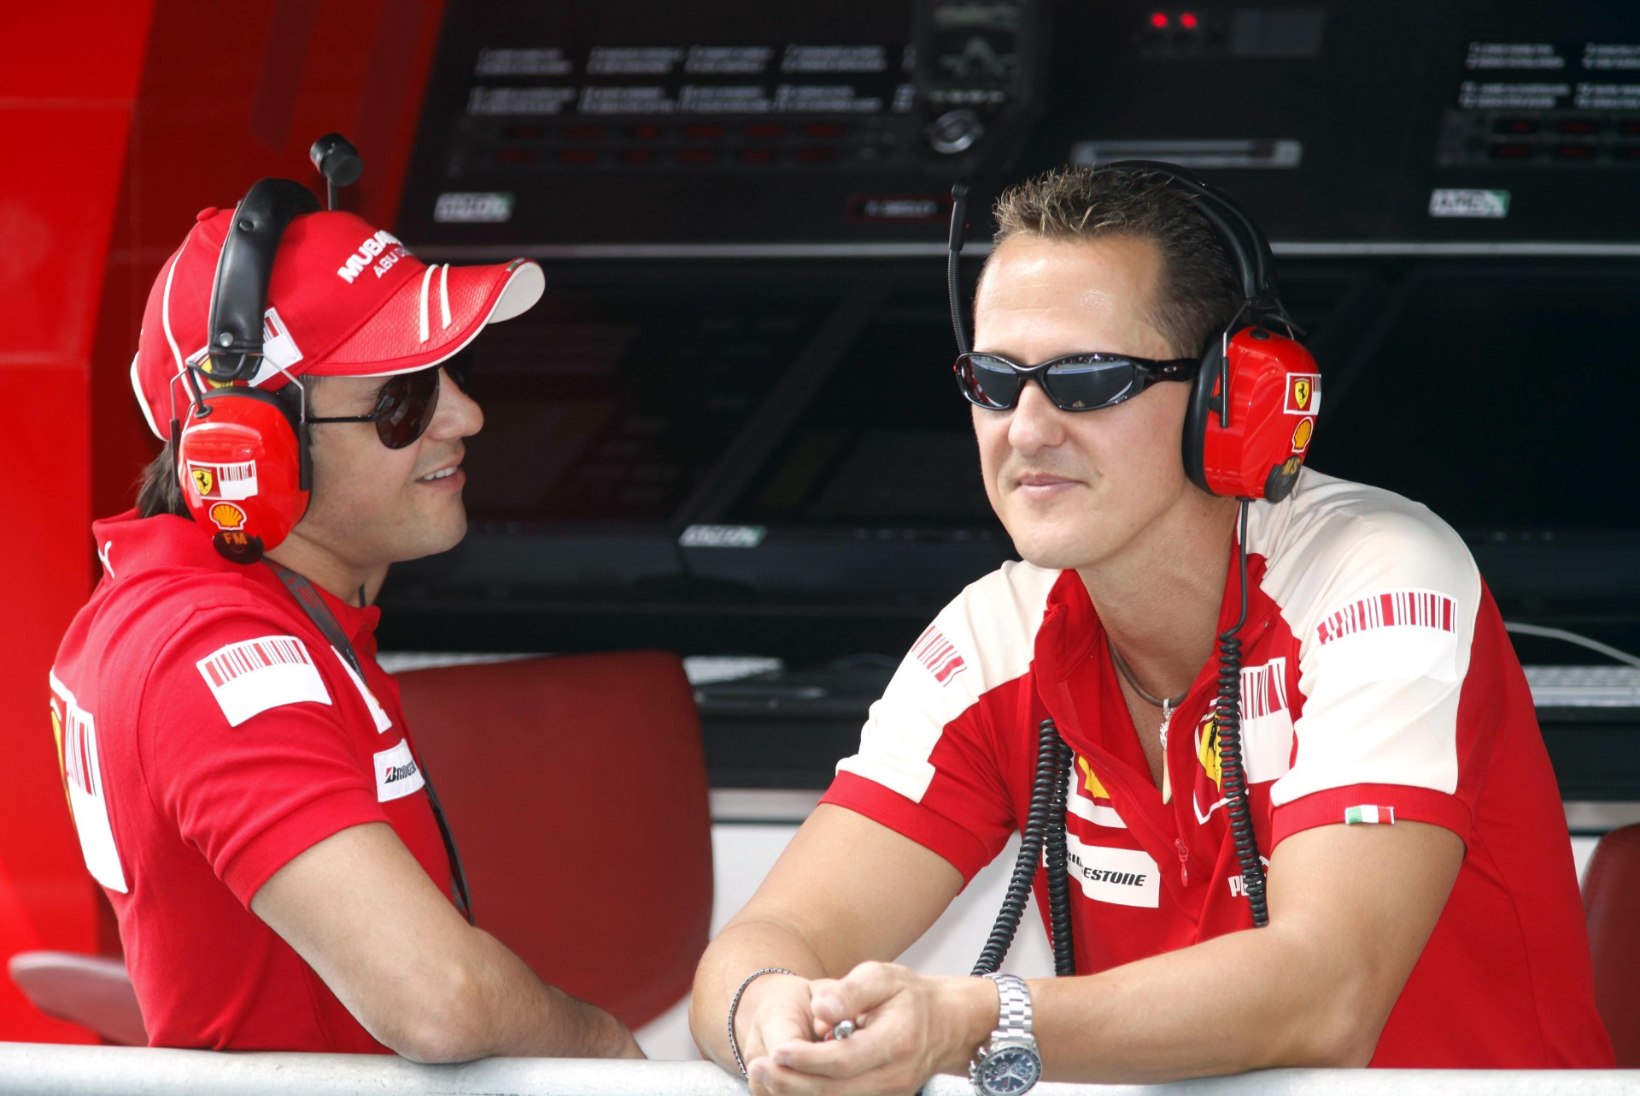 Kas Michael Schumacheri 40(!) aastat pikk seeria saab otsa?